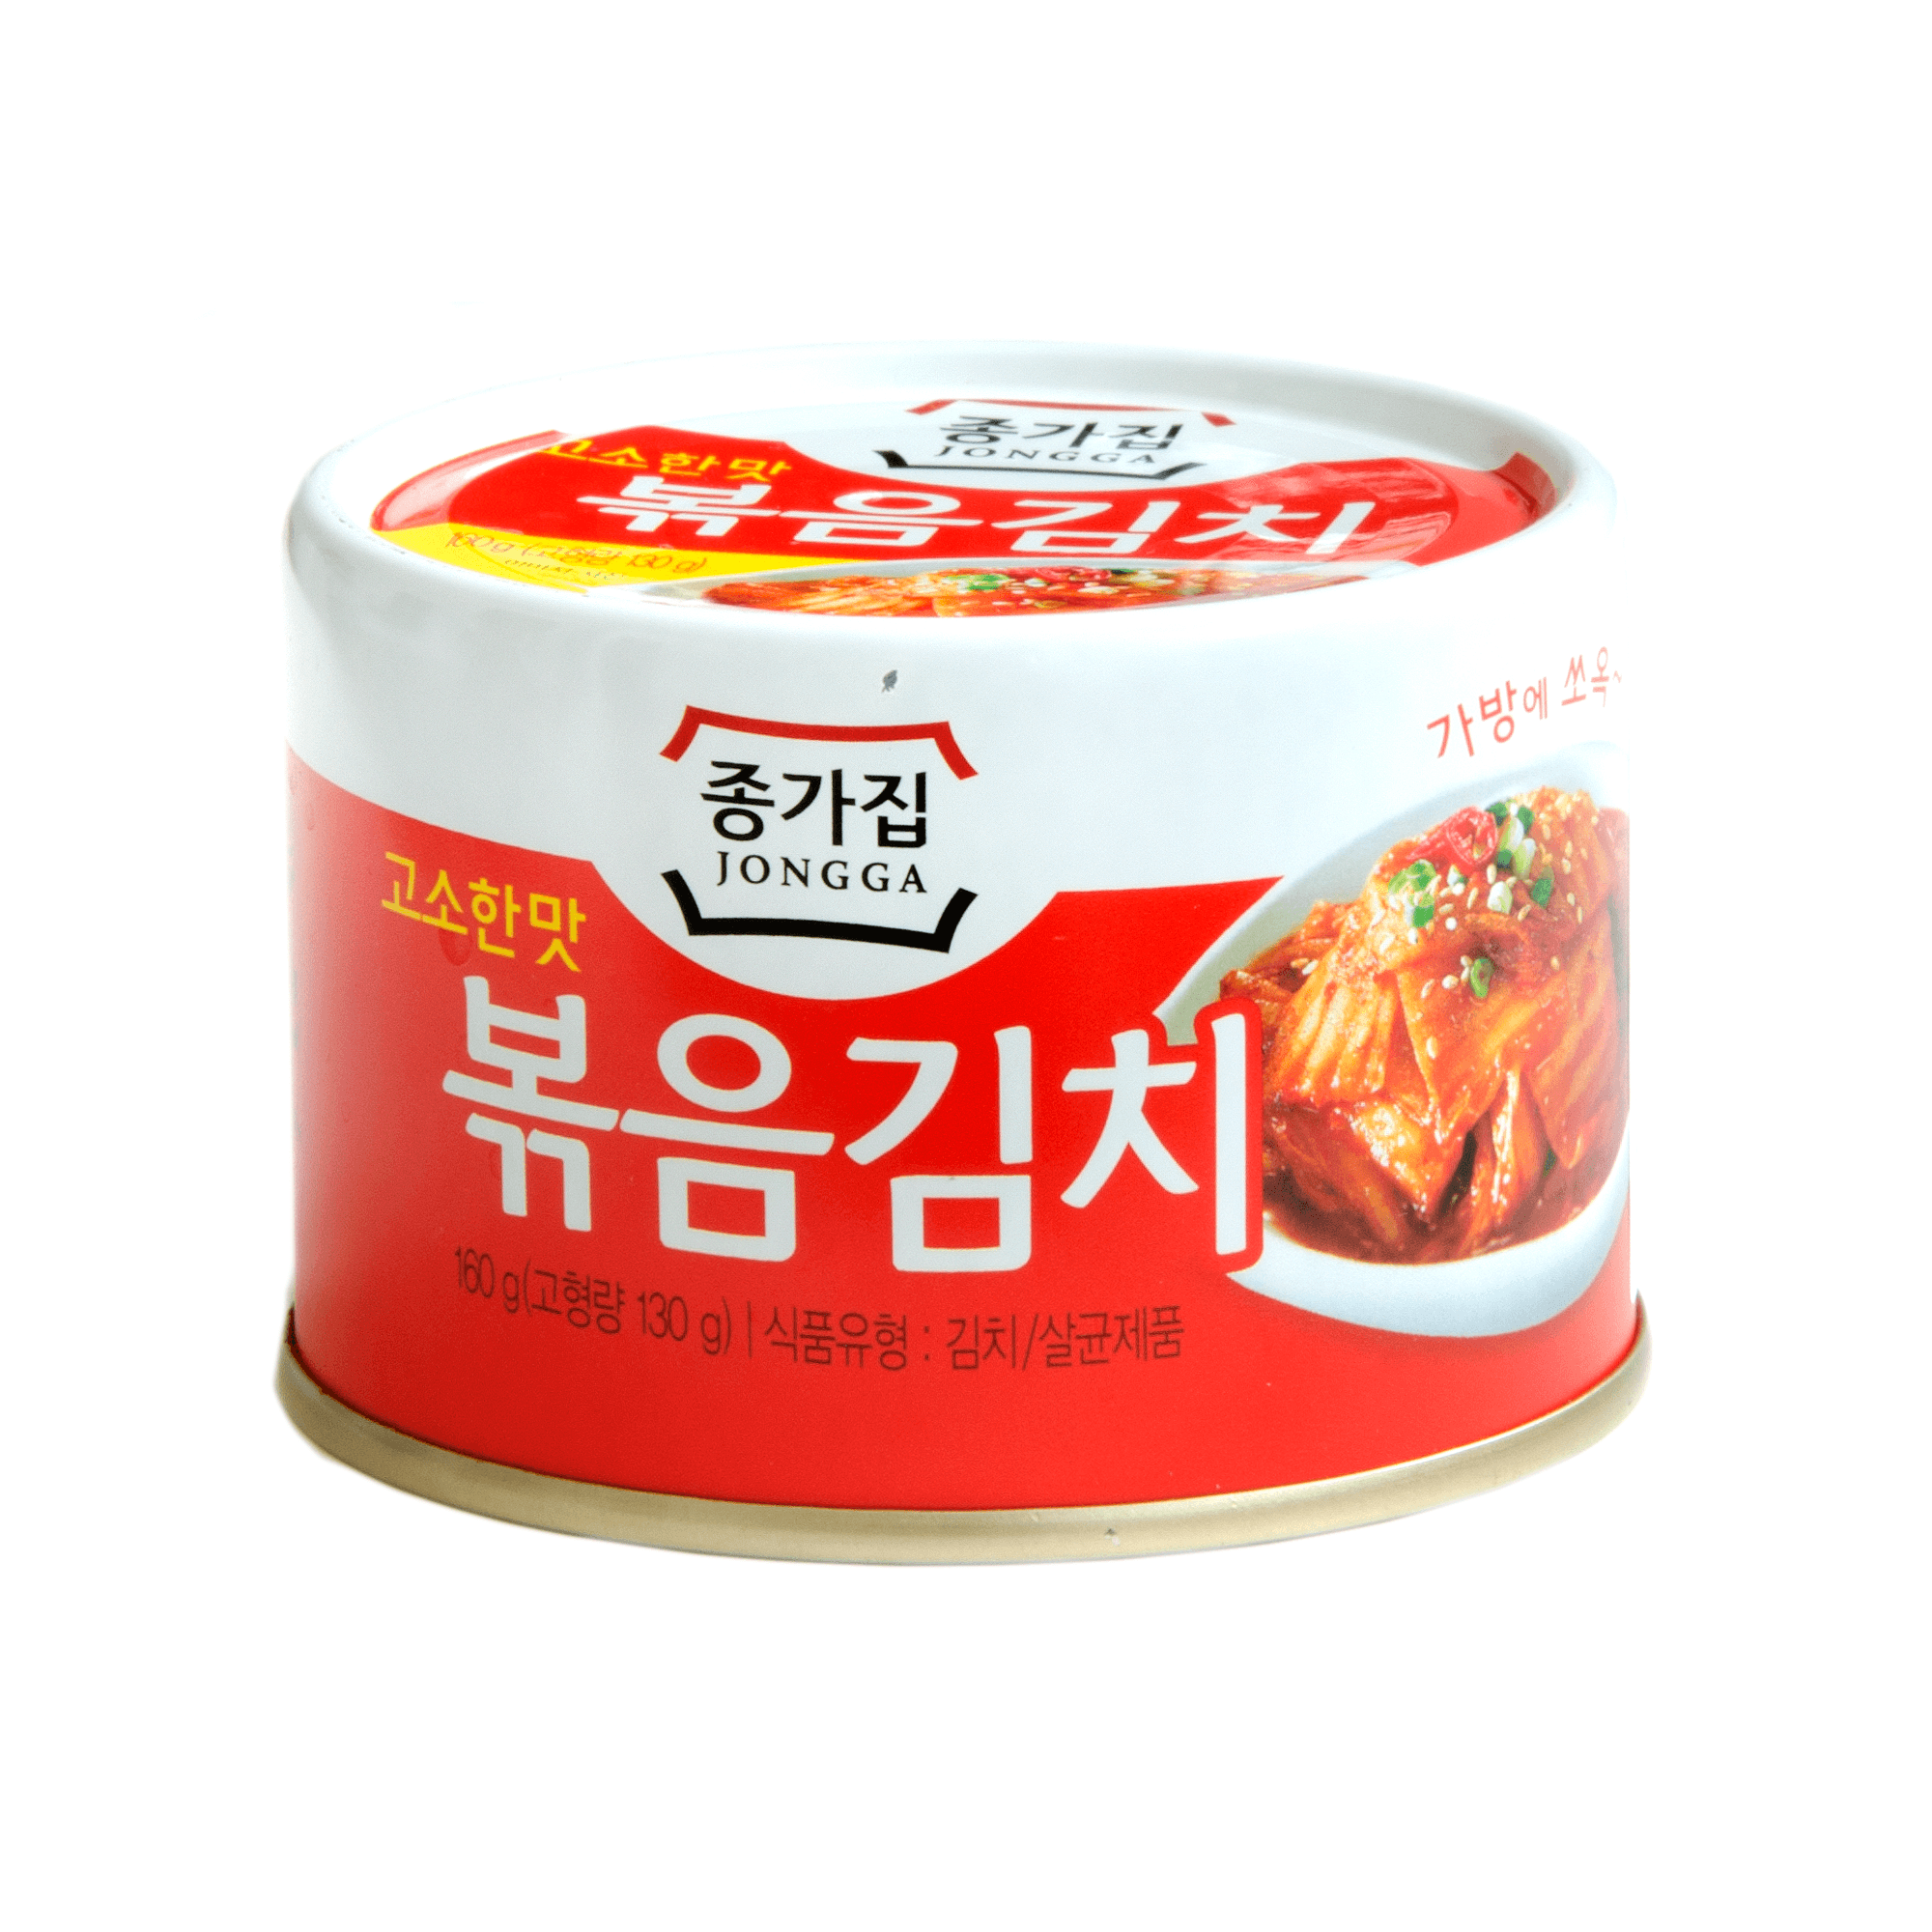 Exclusiv in magazine - Kimchi prajit Jongga 160g, asianfood.ro